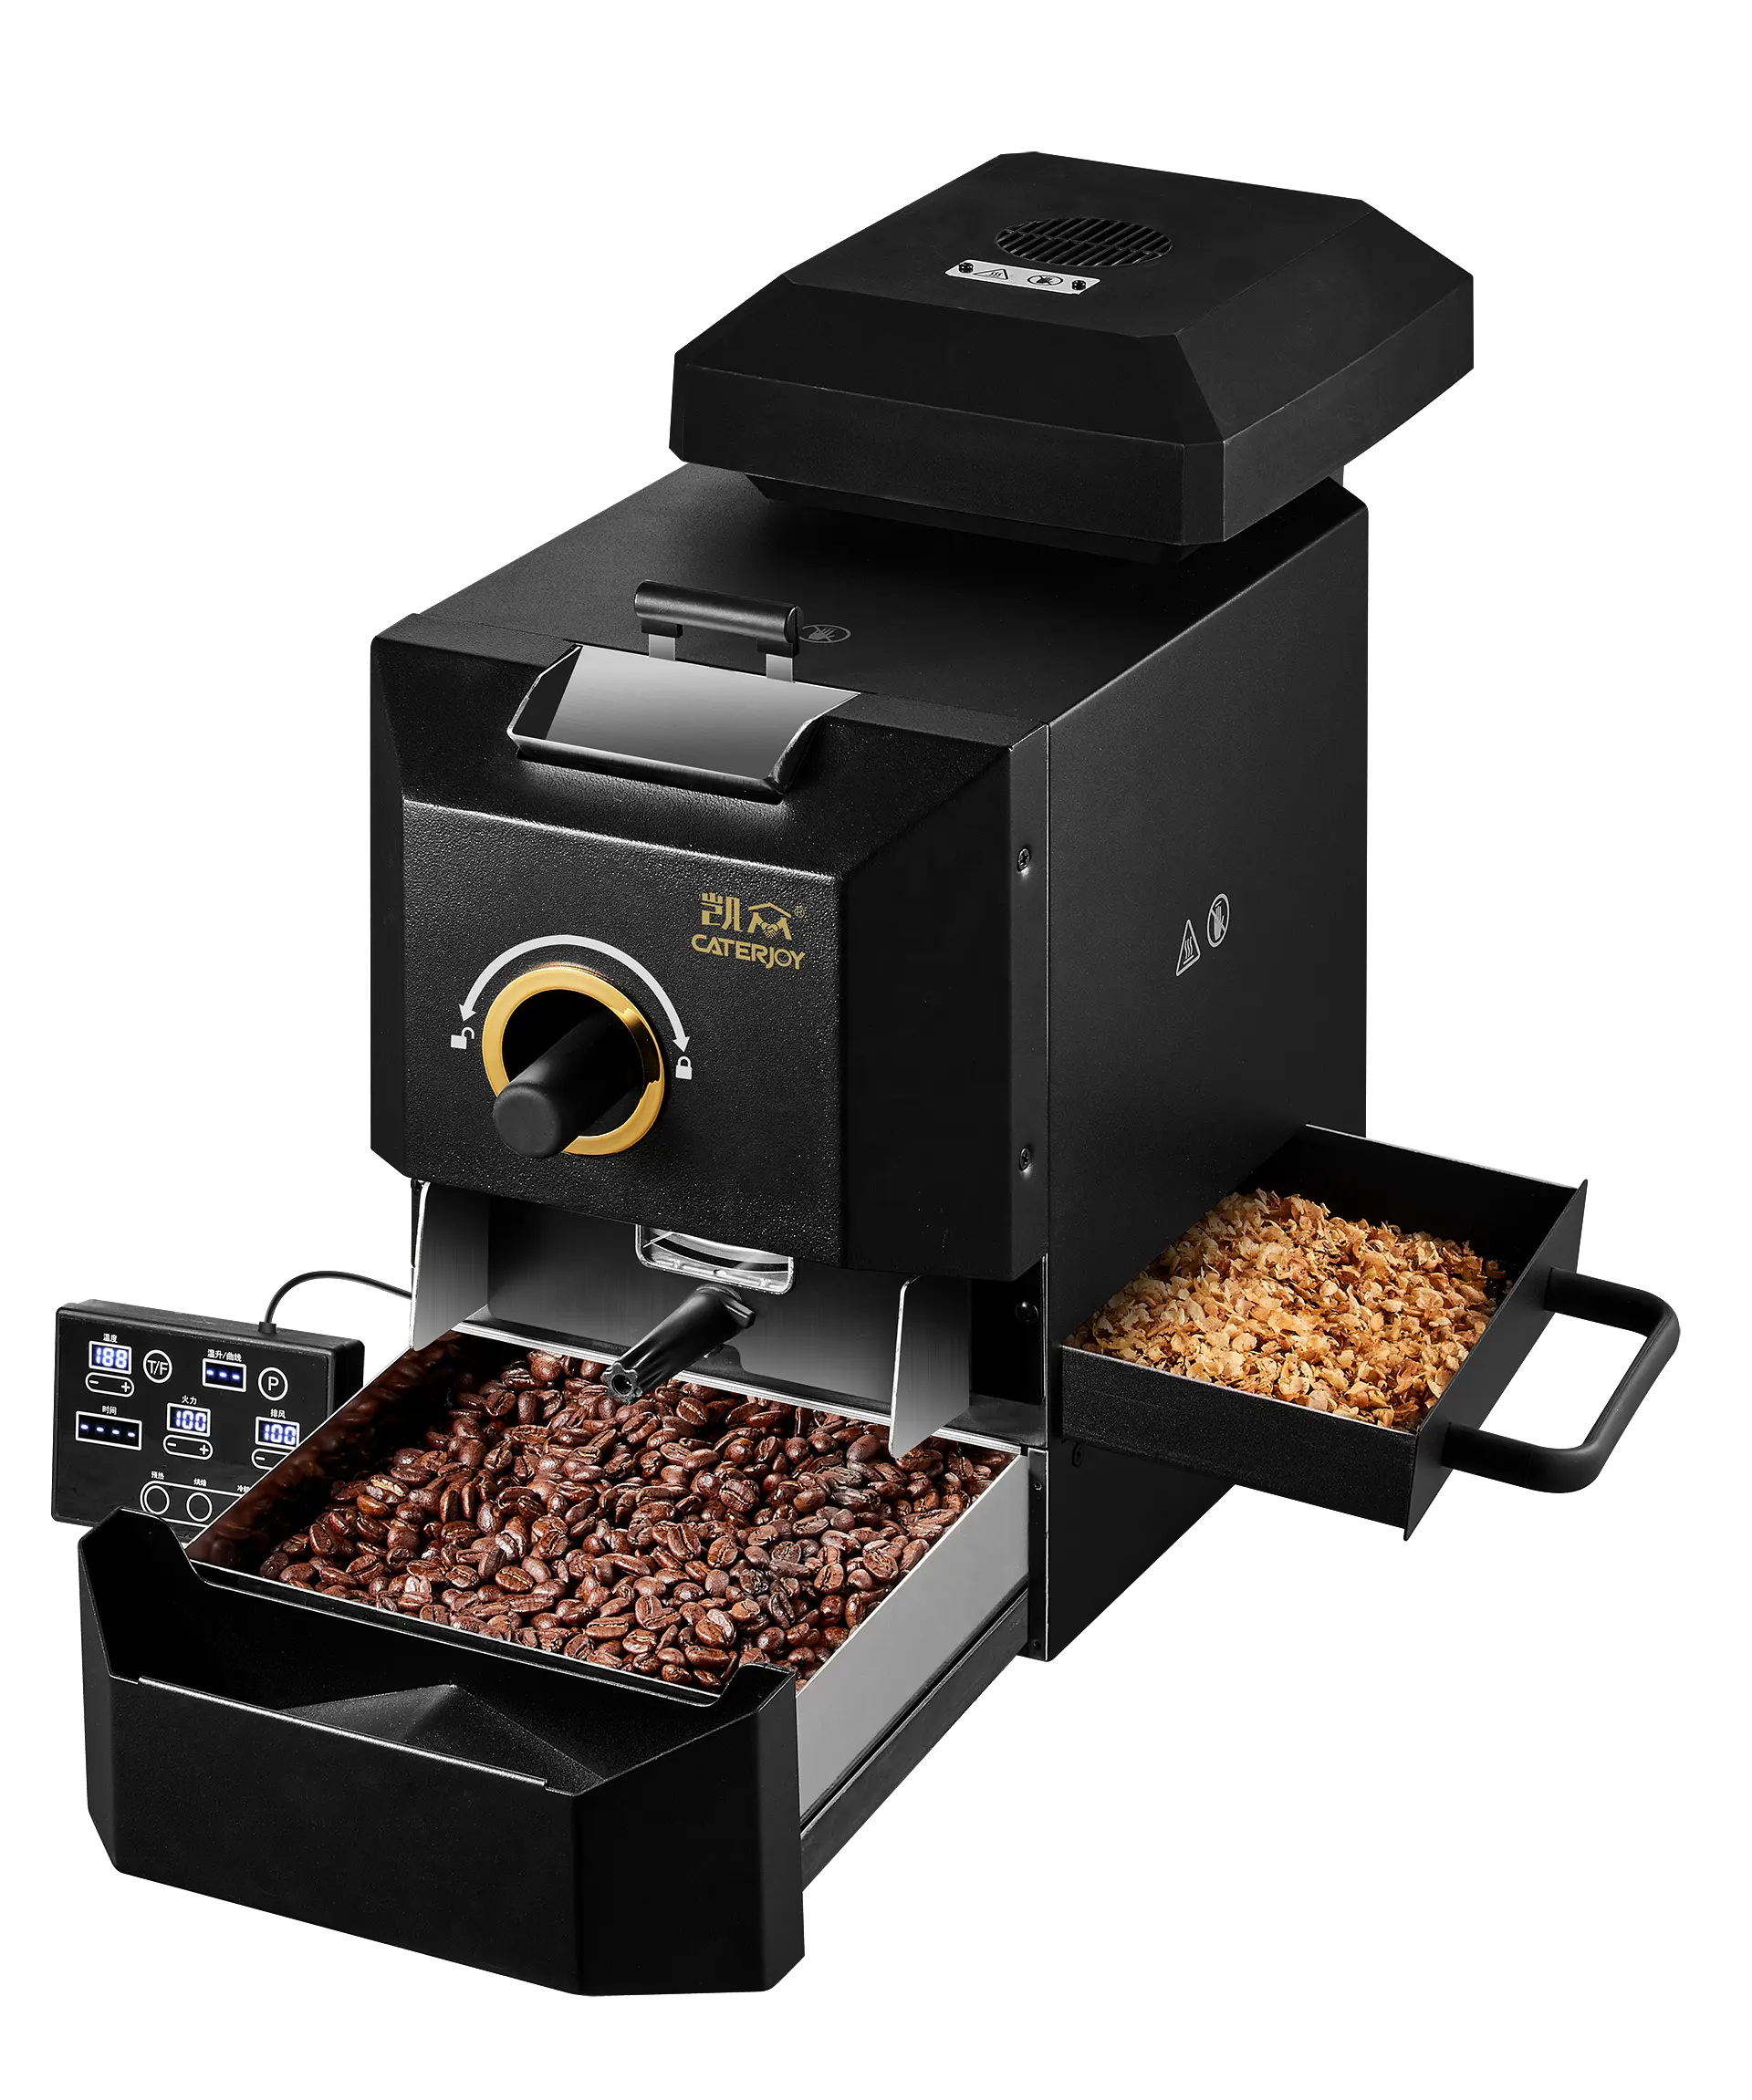 Surewin mesin sangrai biji kopi elektrik, penggunaan rumah tangga penggiling kopi 500g Kecil